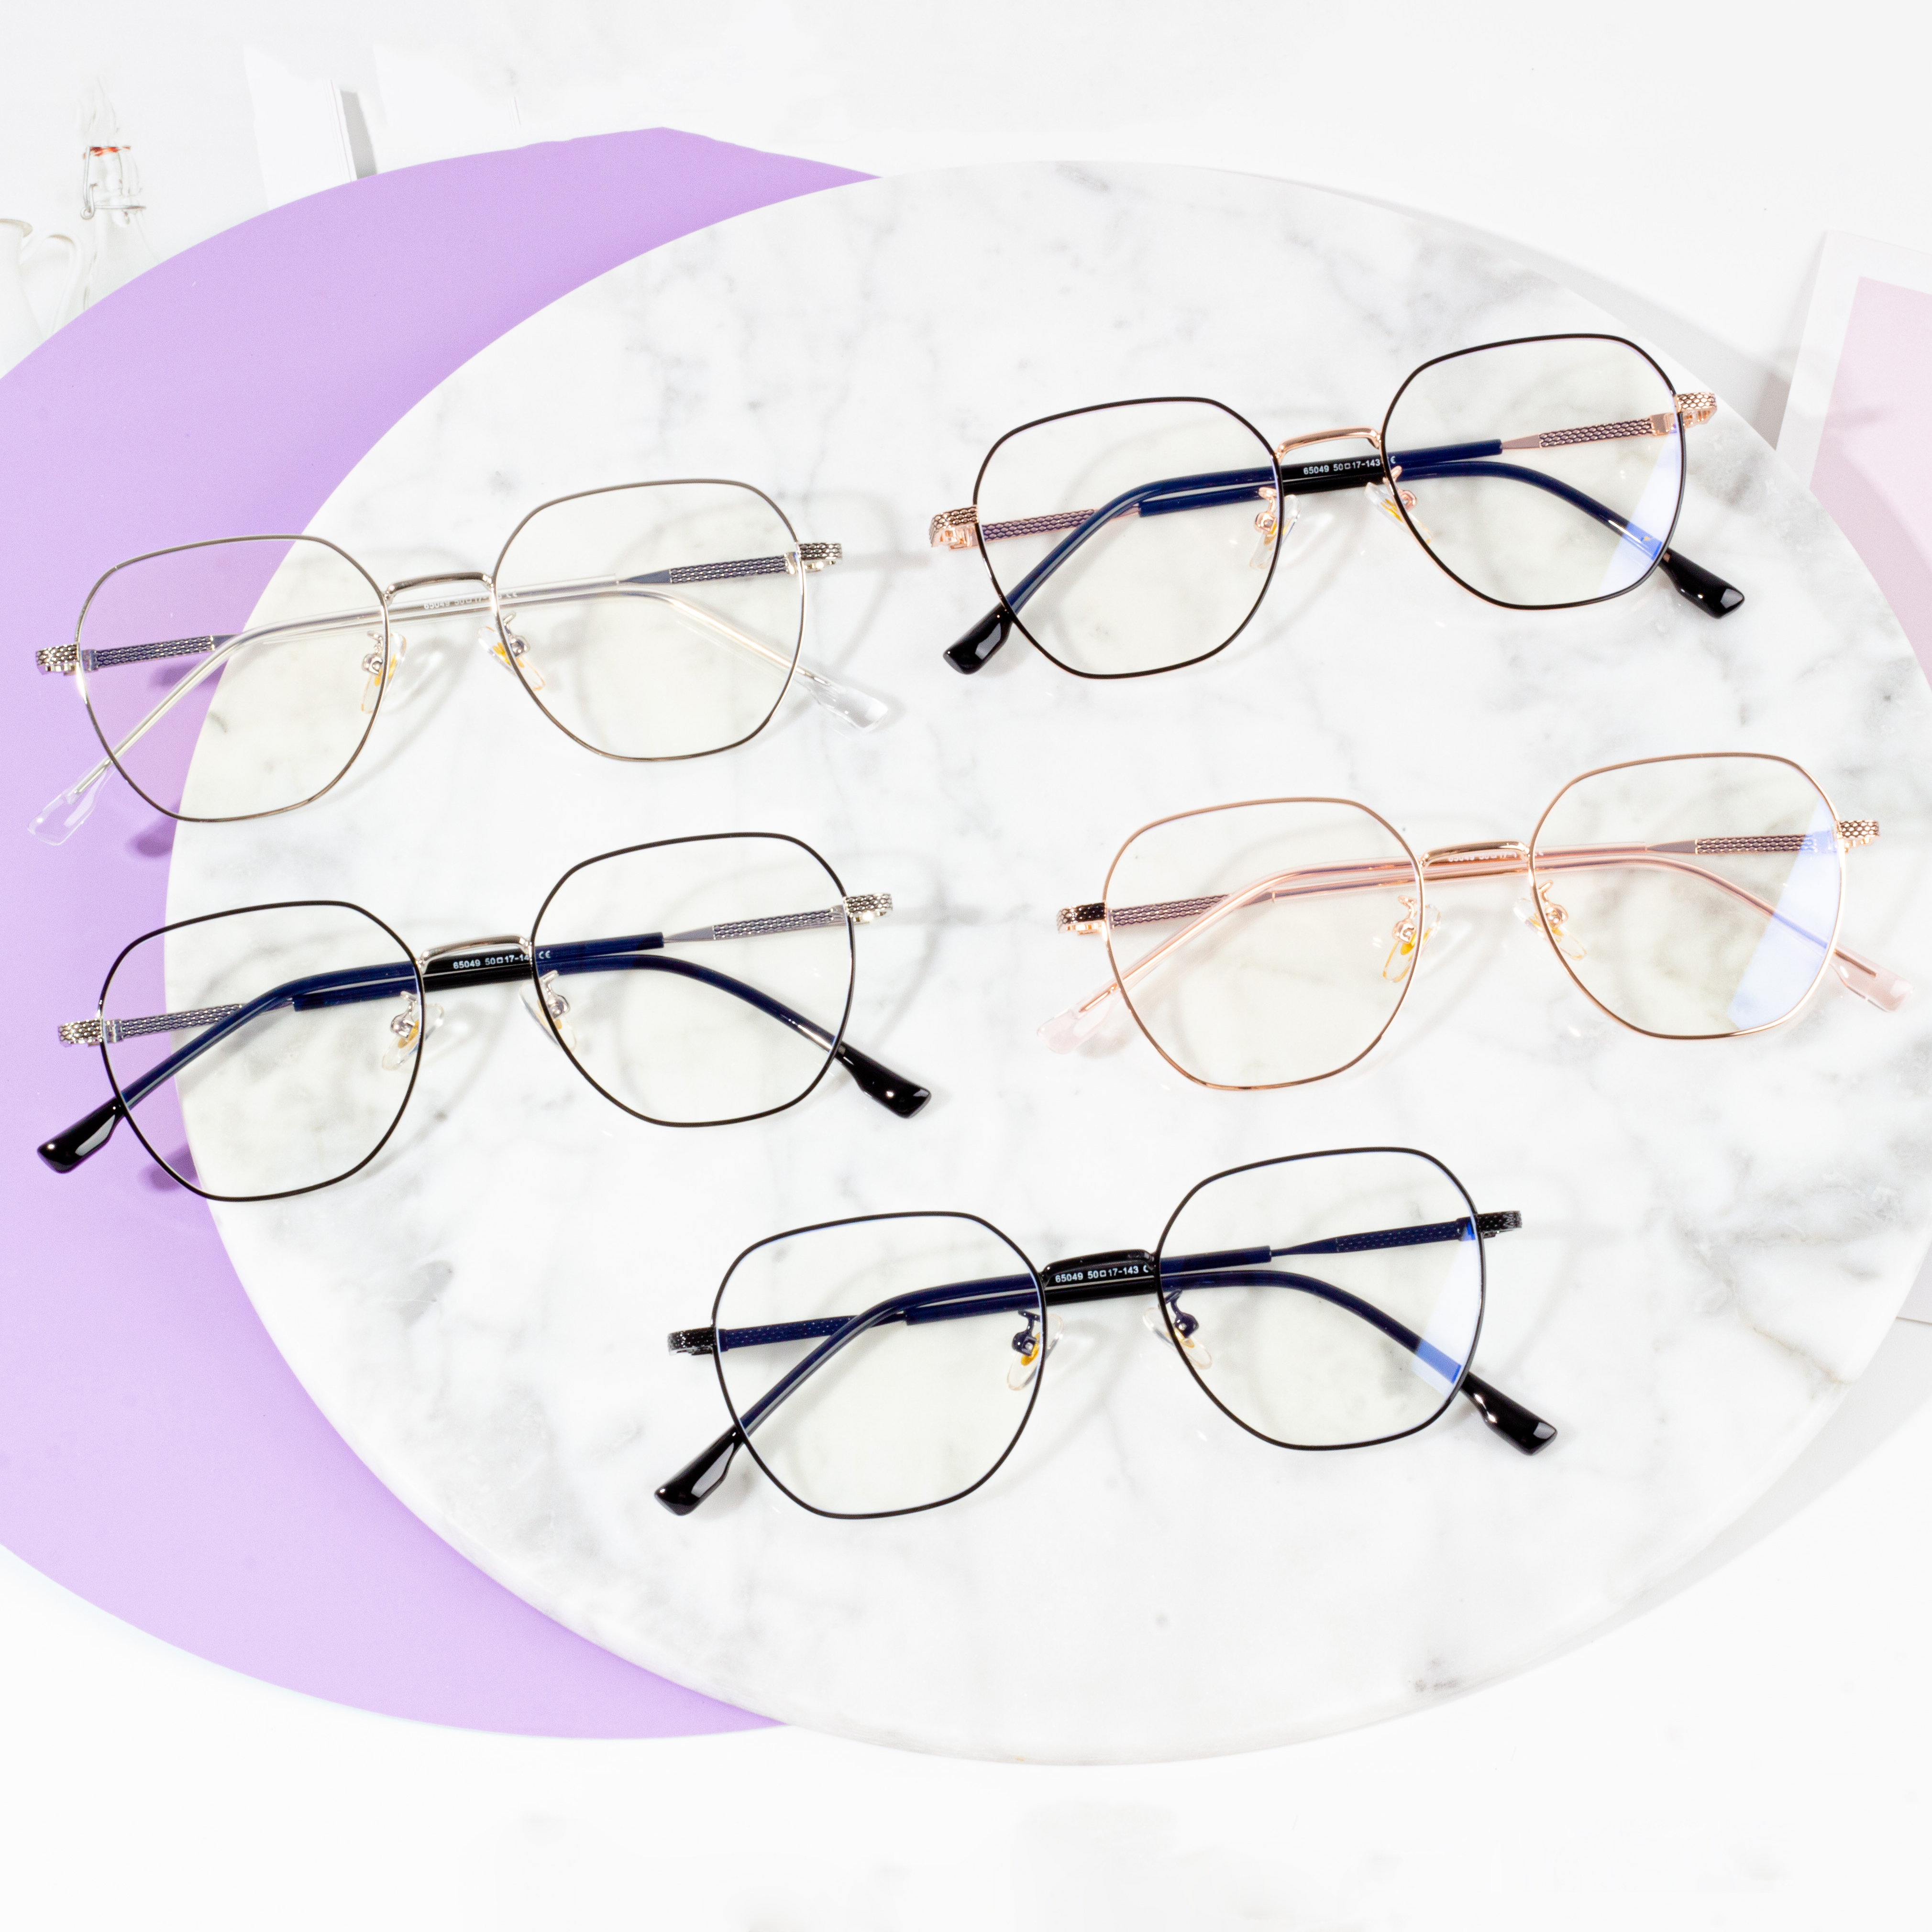 عینک ضد بلوری زنانه با فریم کلاسیک مد یکپارچهسازی با سیستمعامل